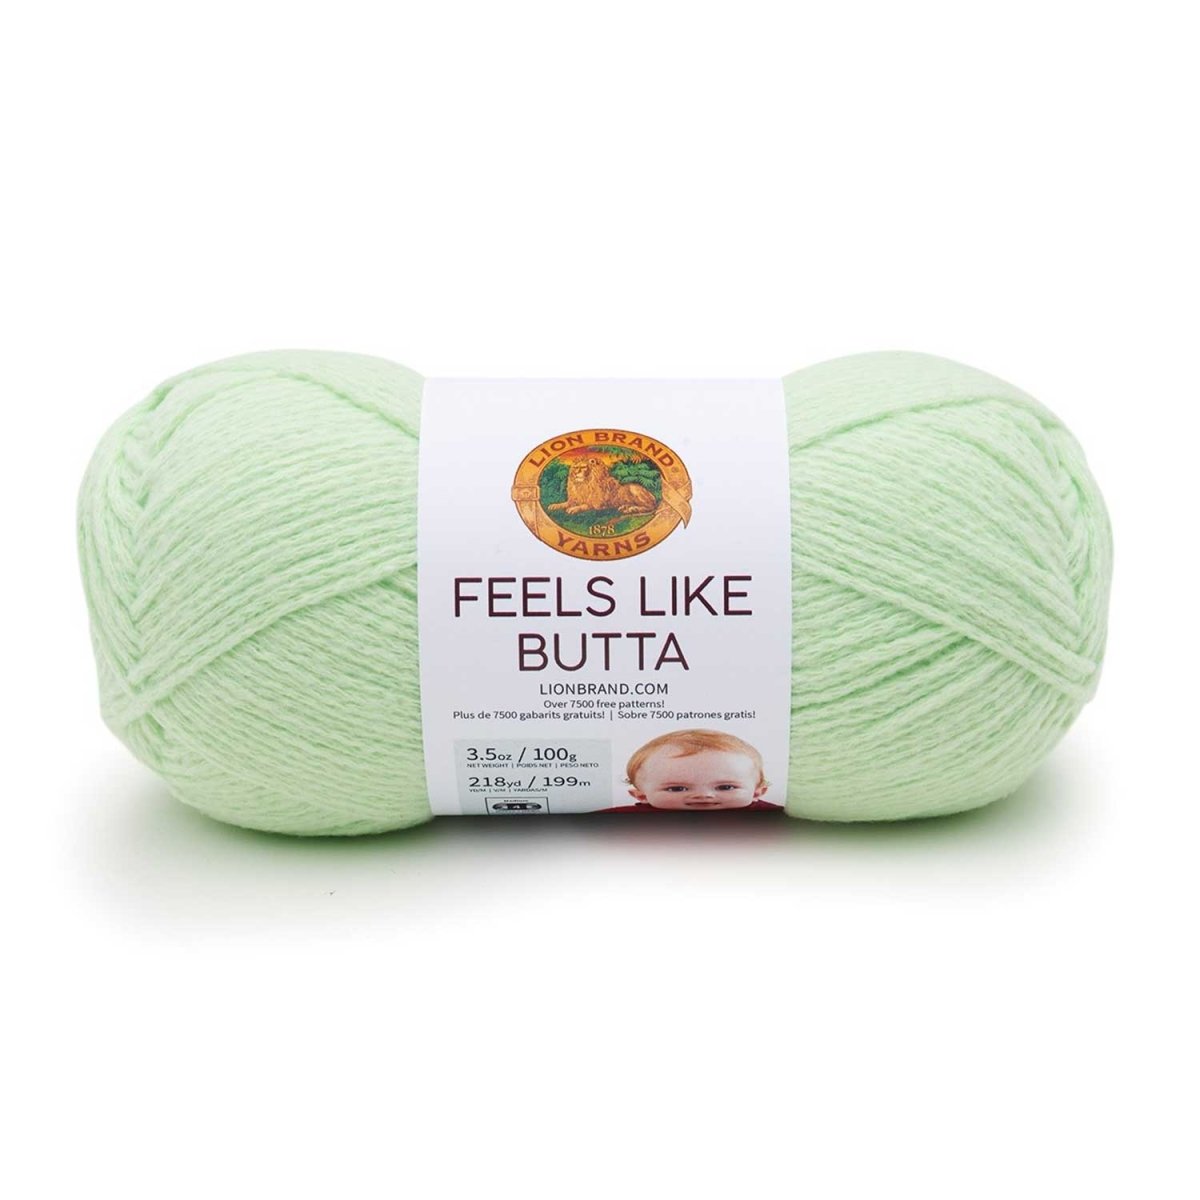 FEELS LIKE BUTTA - Crochetstores215-156